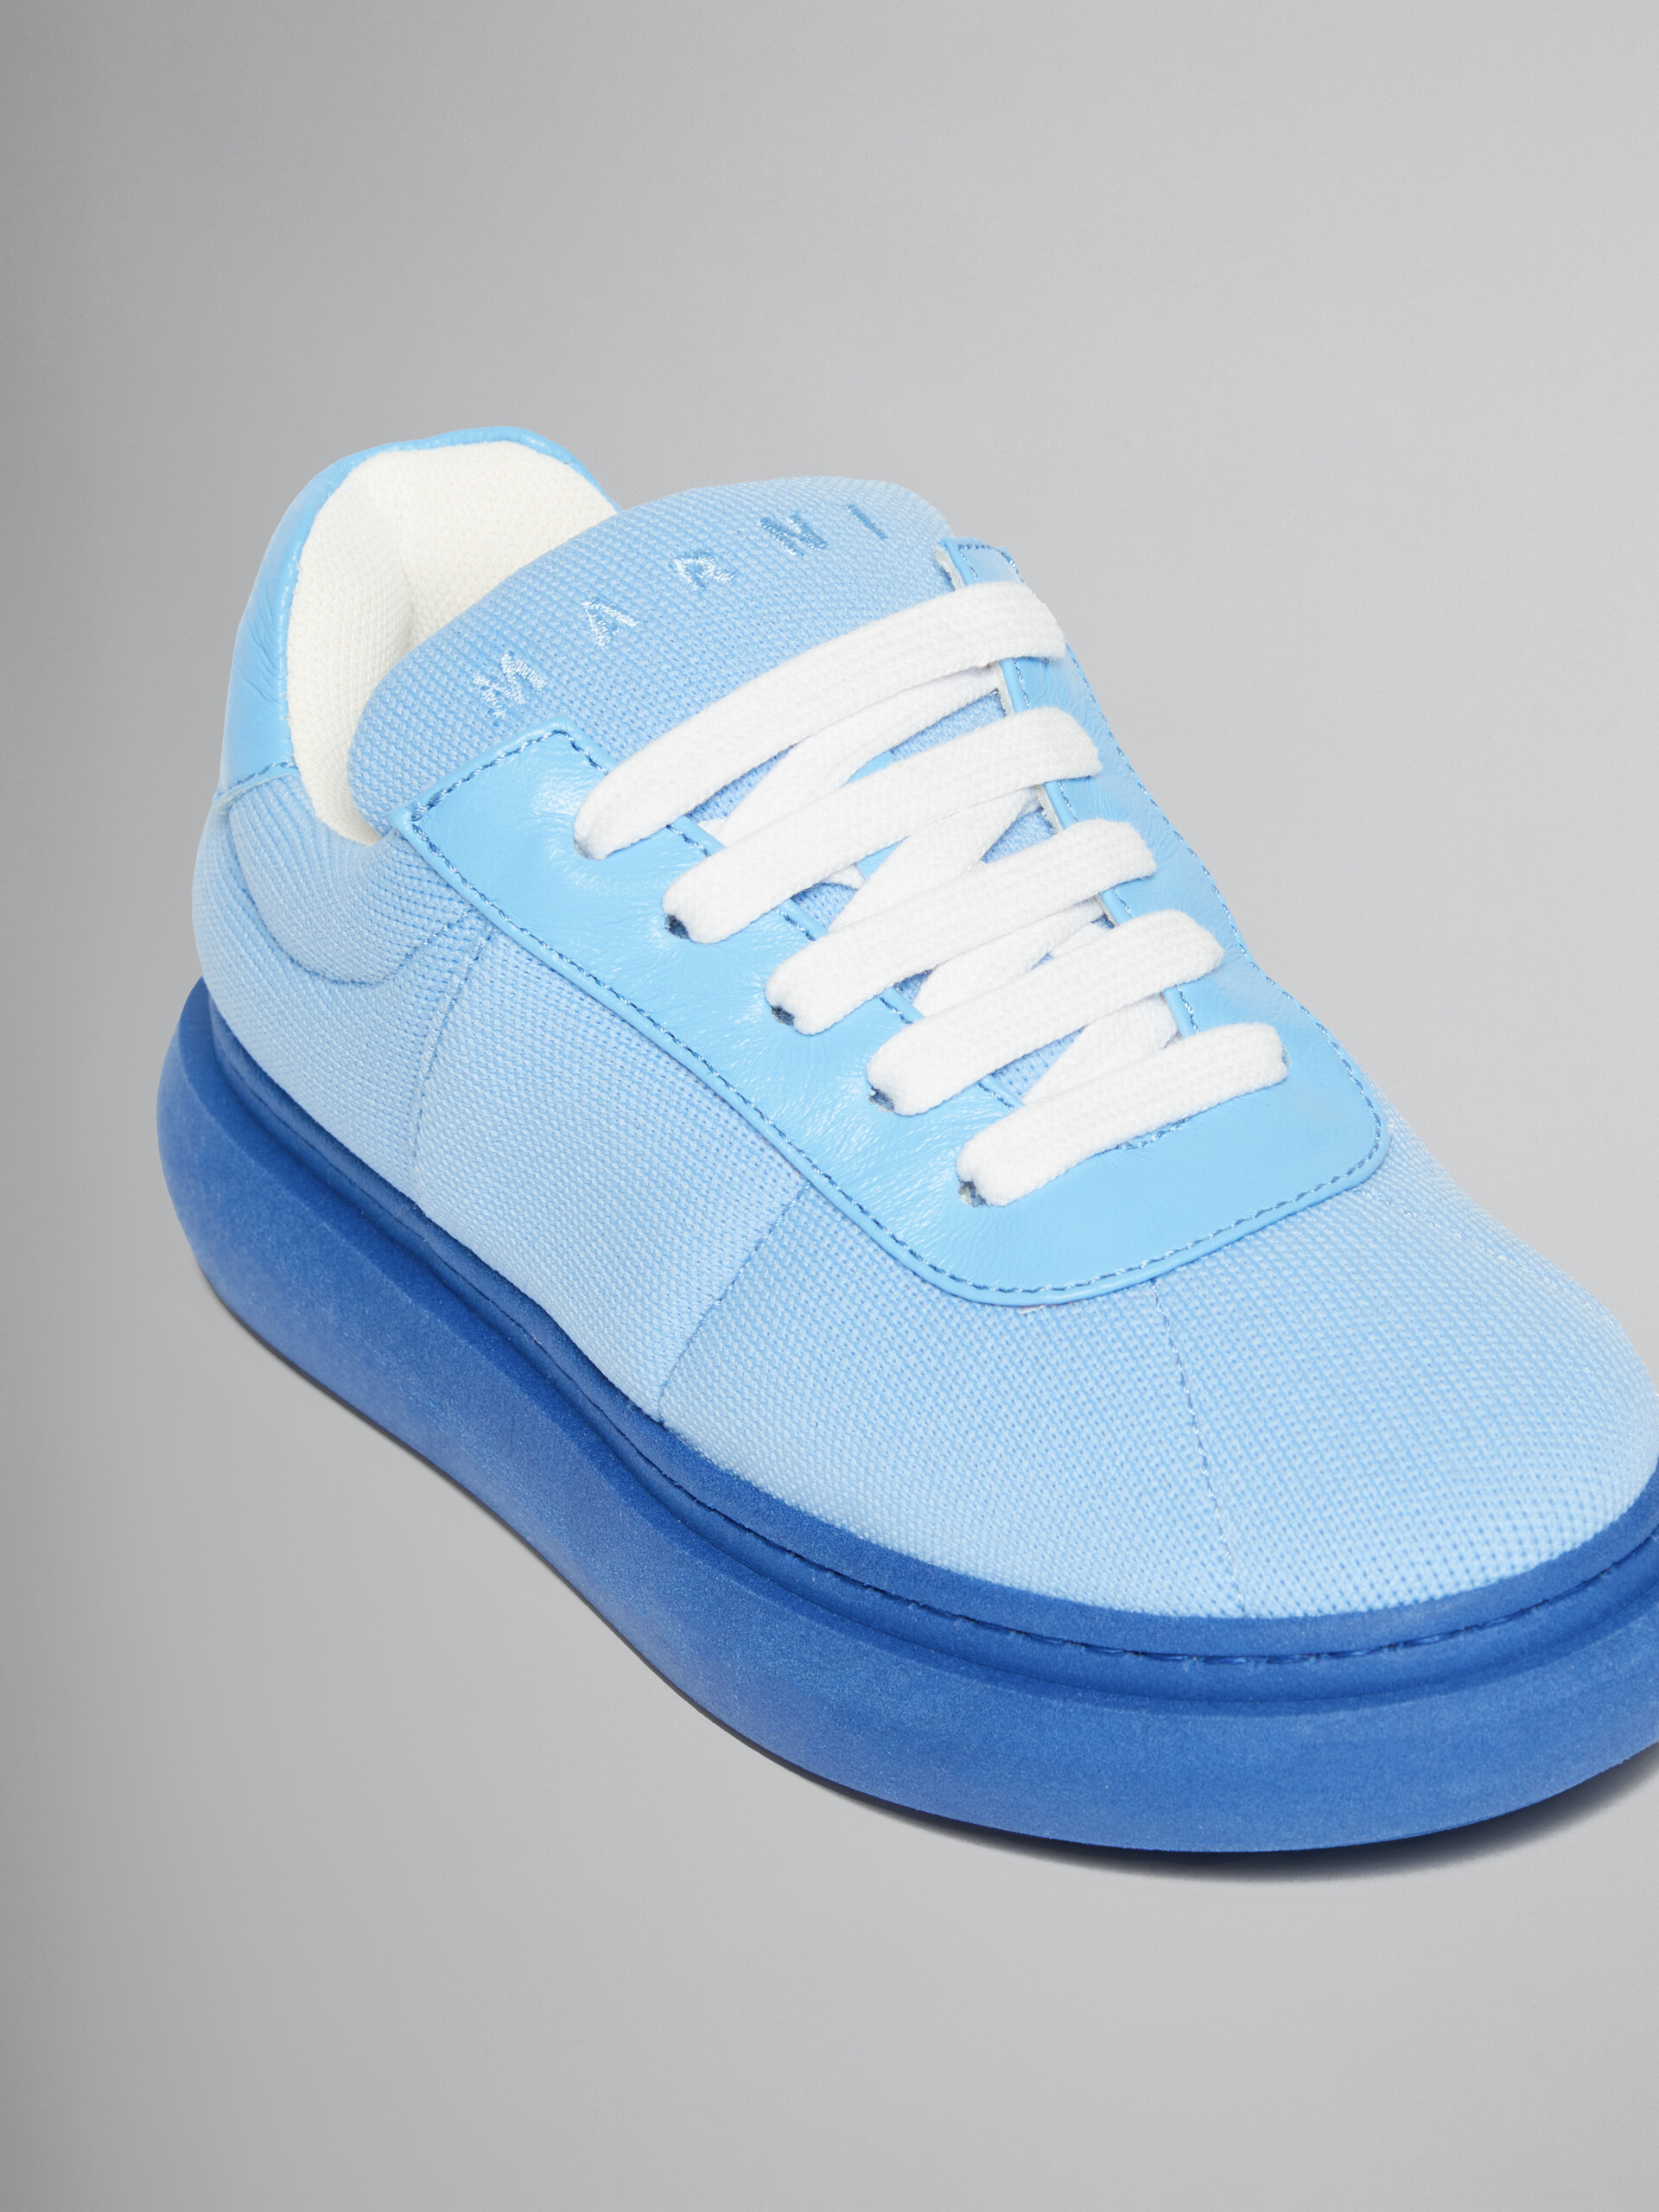 Sneakers en cuir matelassé bleu clair - ENFANT - Image 4